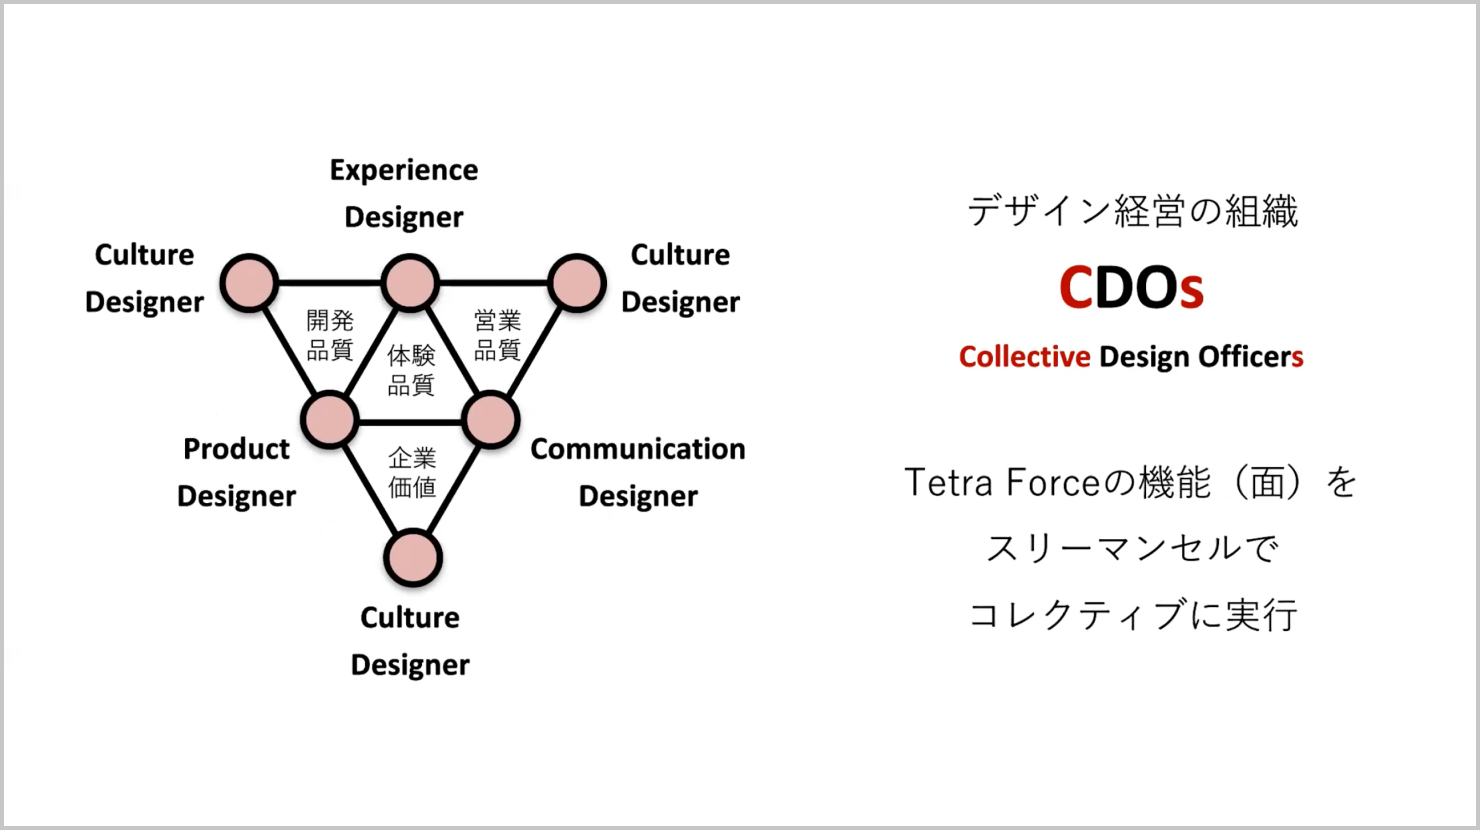 発表資料：CDOsを説明した図。